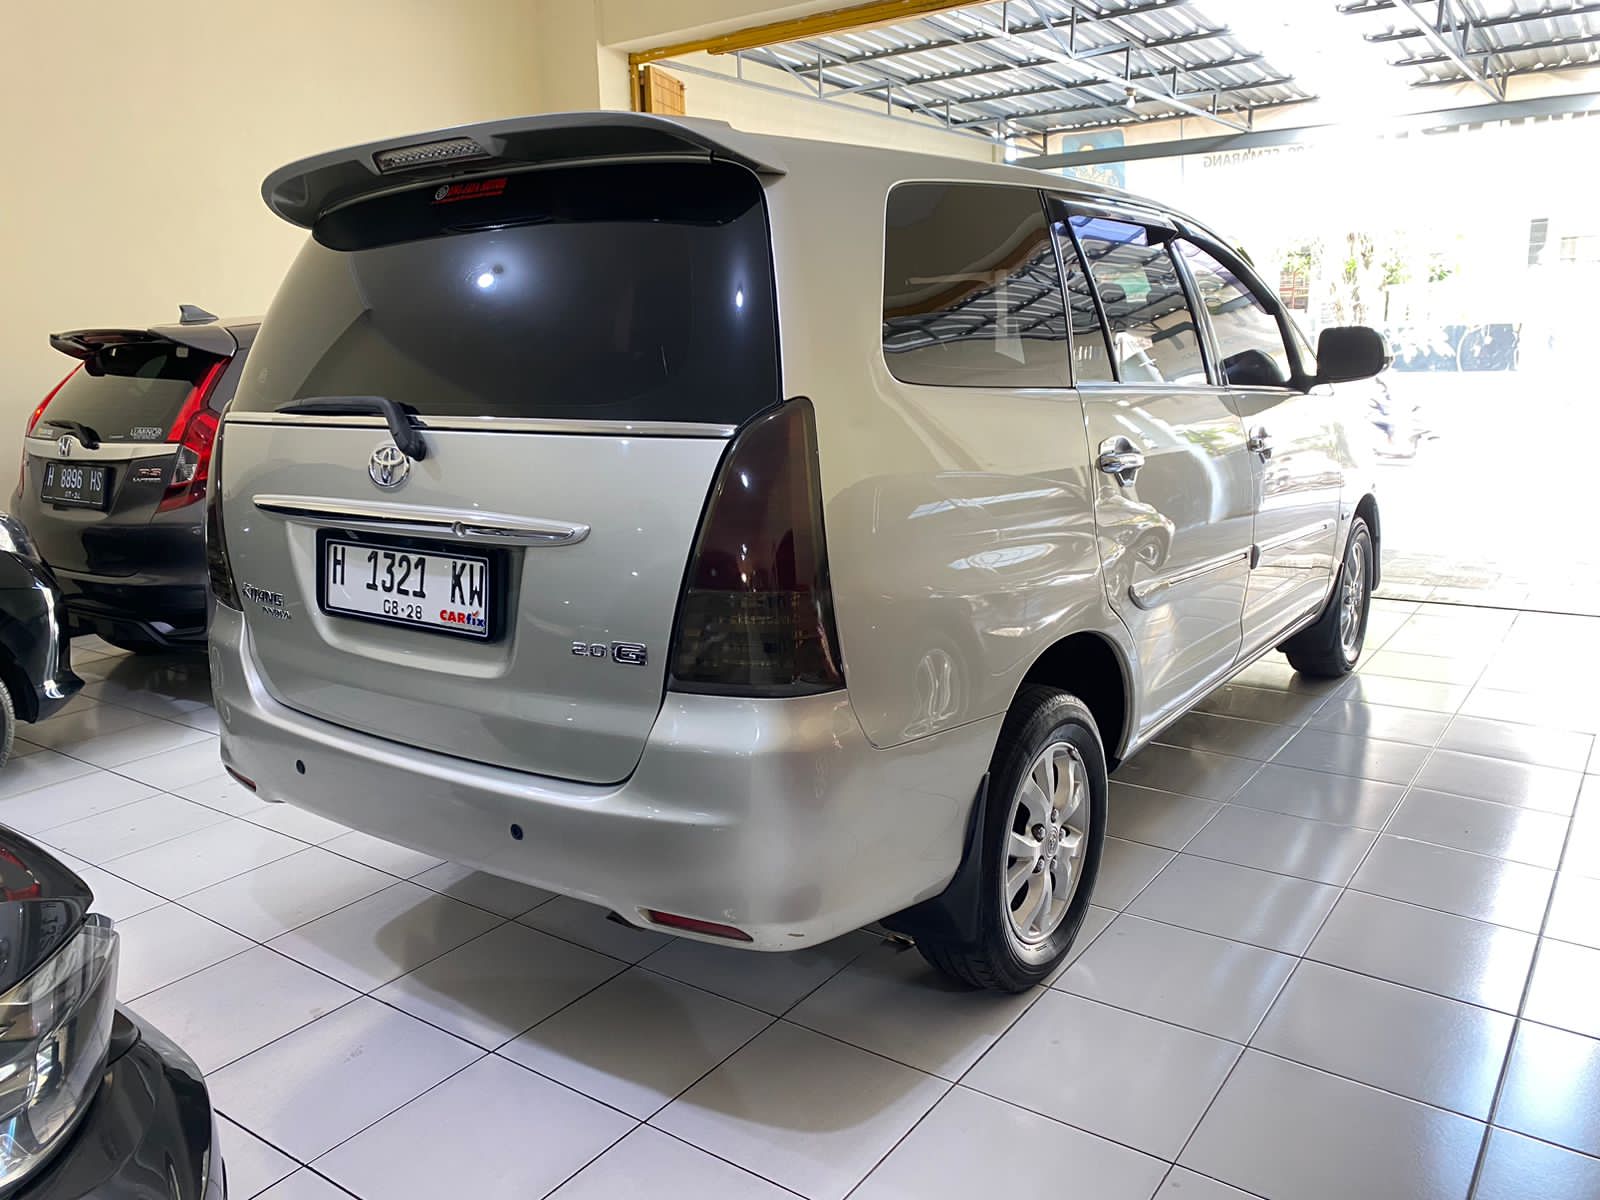 Dijual 2010 Toyota Innova BENSIN G 2.0 AT BENSIN G 2.0 AT Bekas